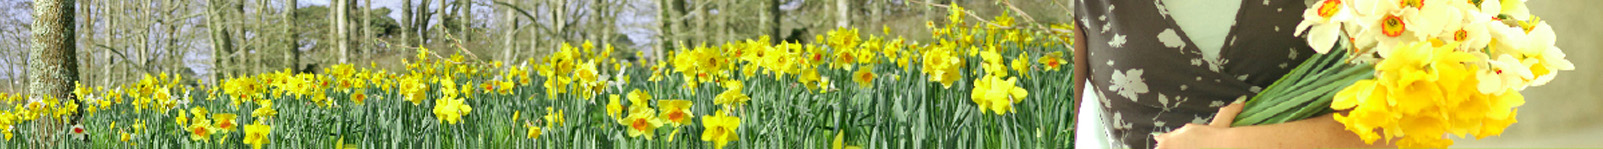 fentongollan_farm__wide_daffodils.jpg